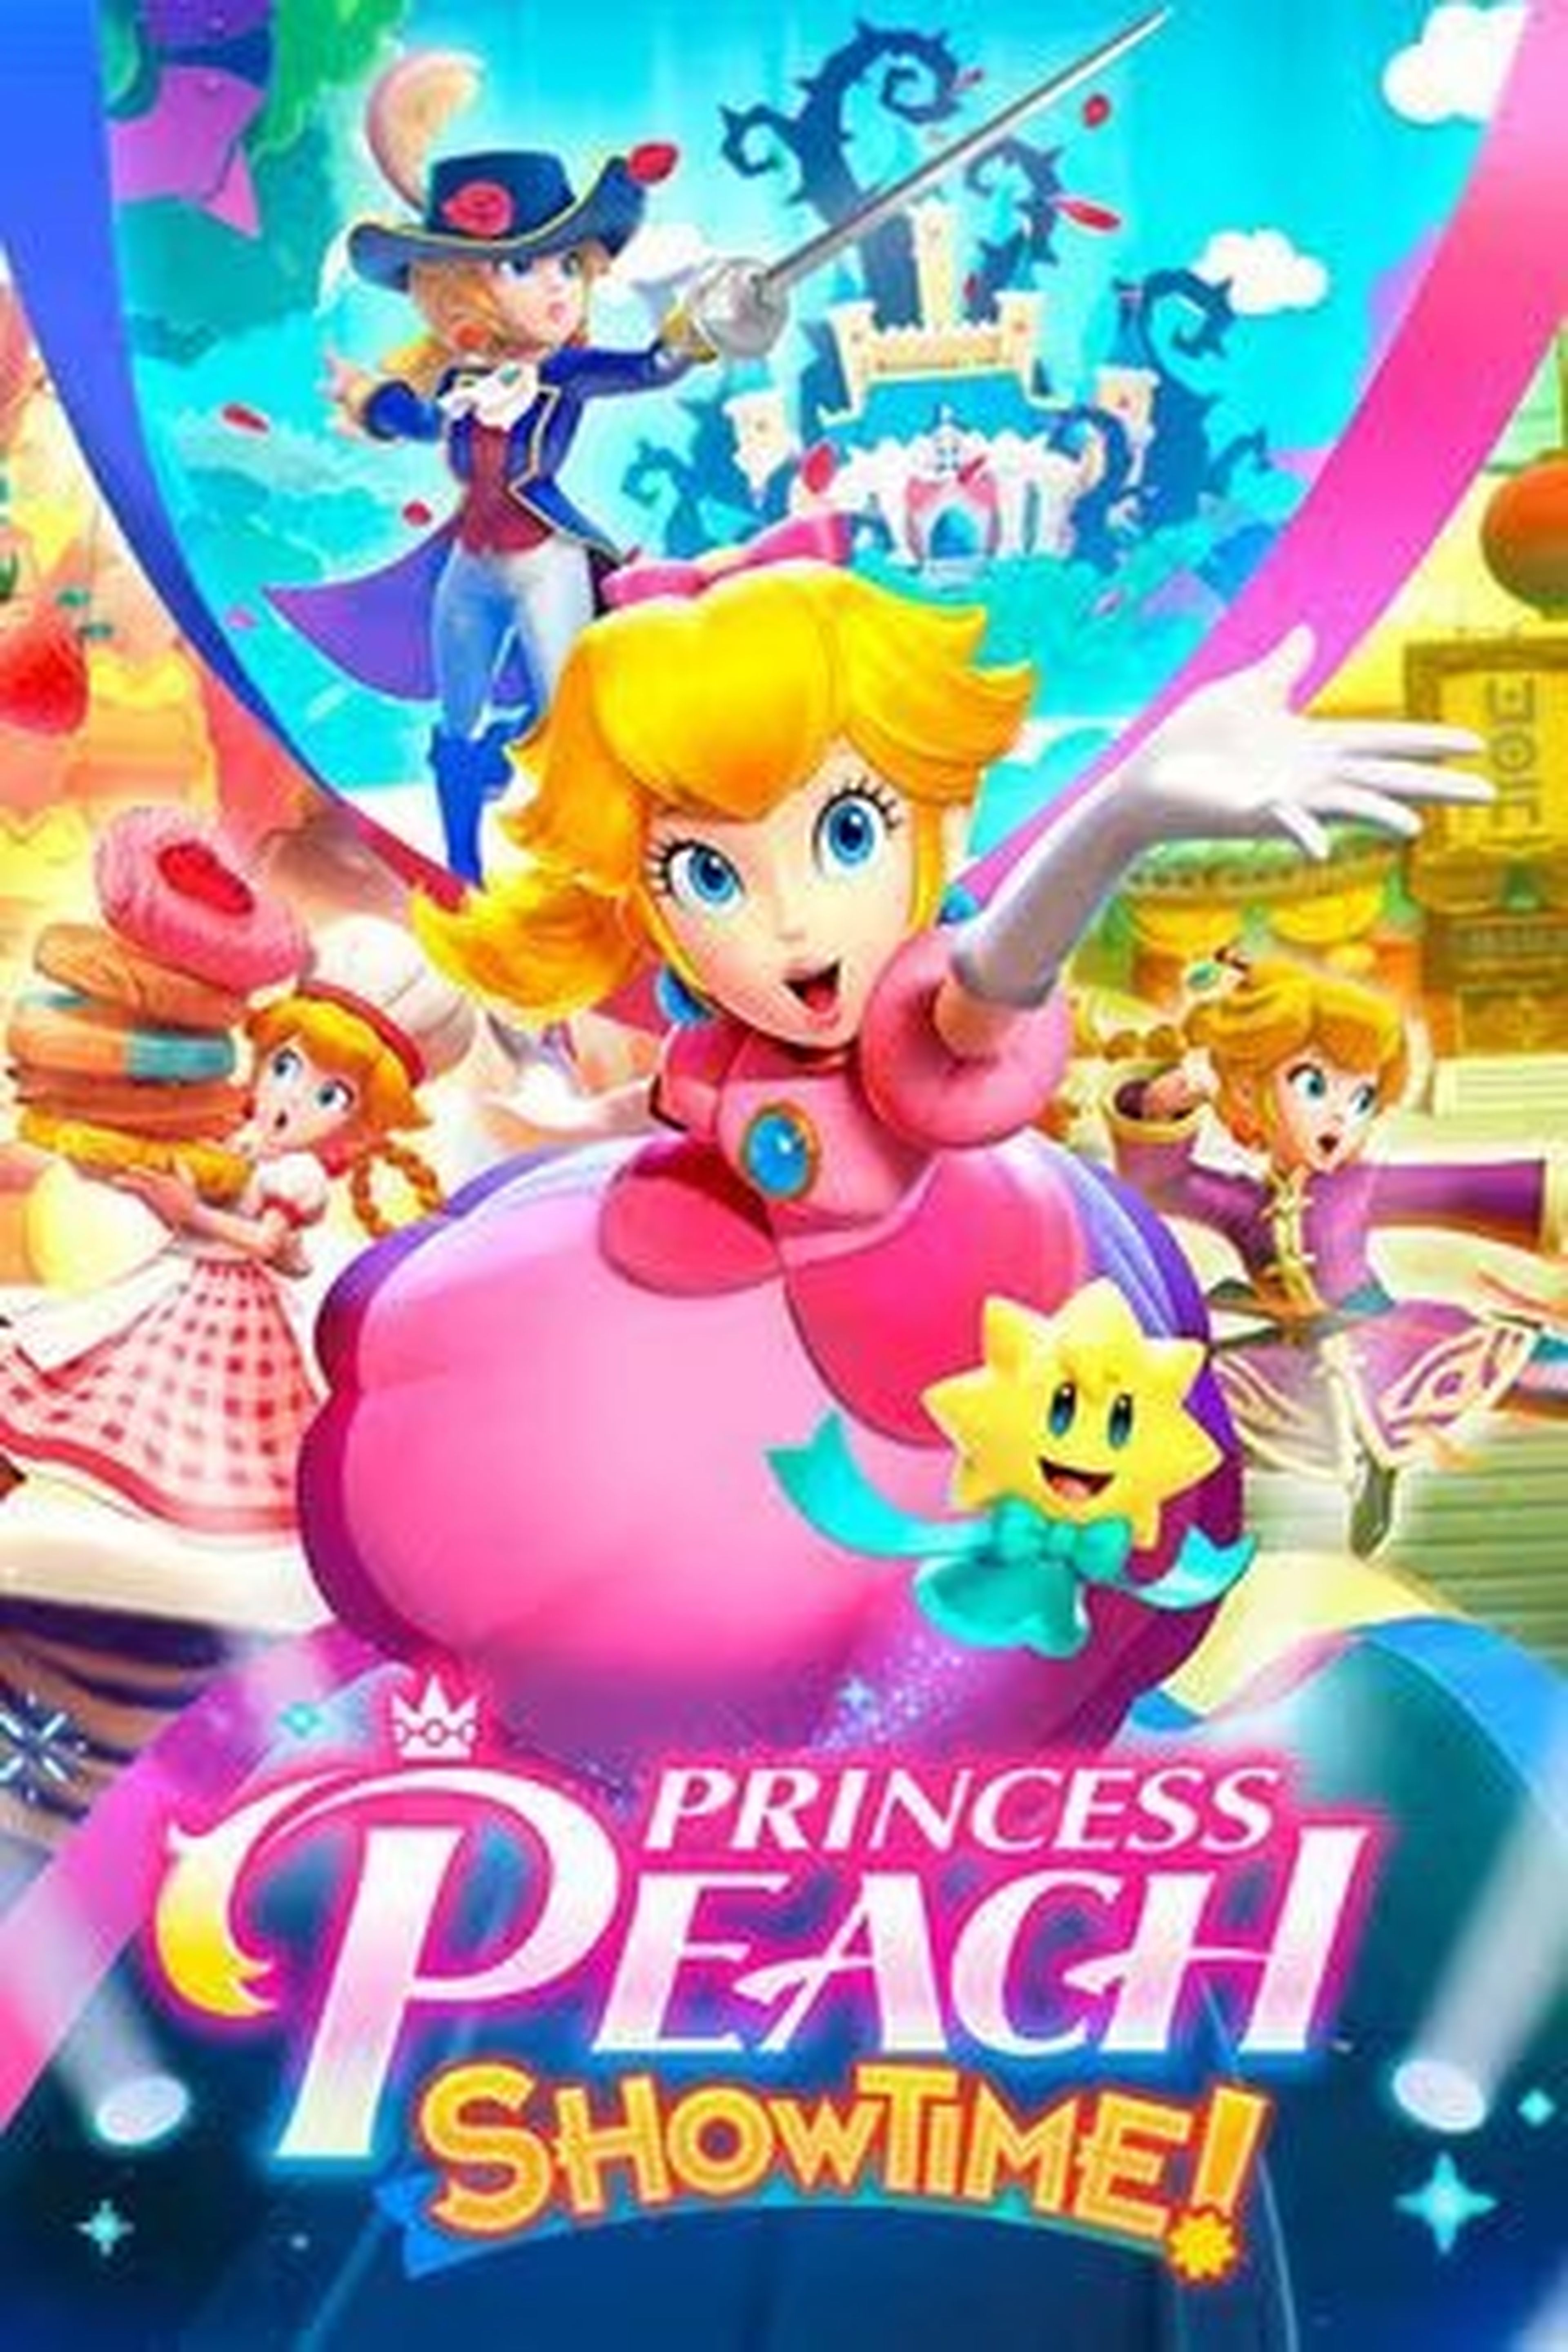 Nintendo cambia el diseño de la Princesa Peach y enfrenta a la comunidad